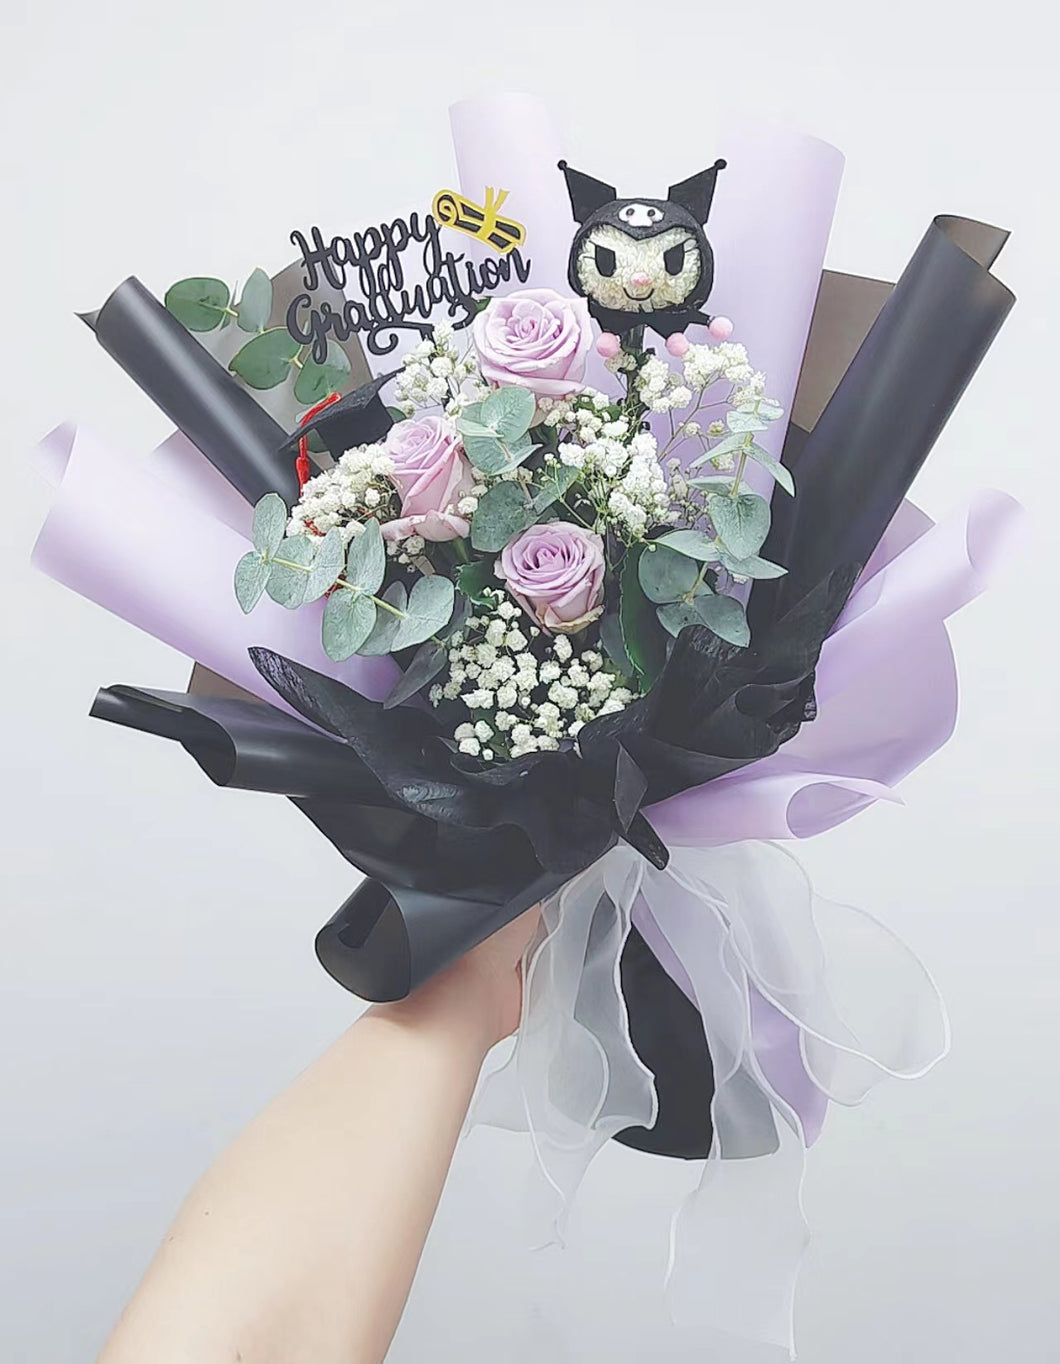 中紫色玫瑰花束-情人節花束-表白-Kuromi 乒乓菊造型公仔-紀念日-求婚 F-265